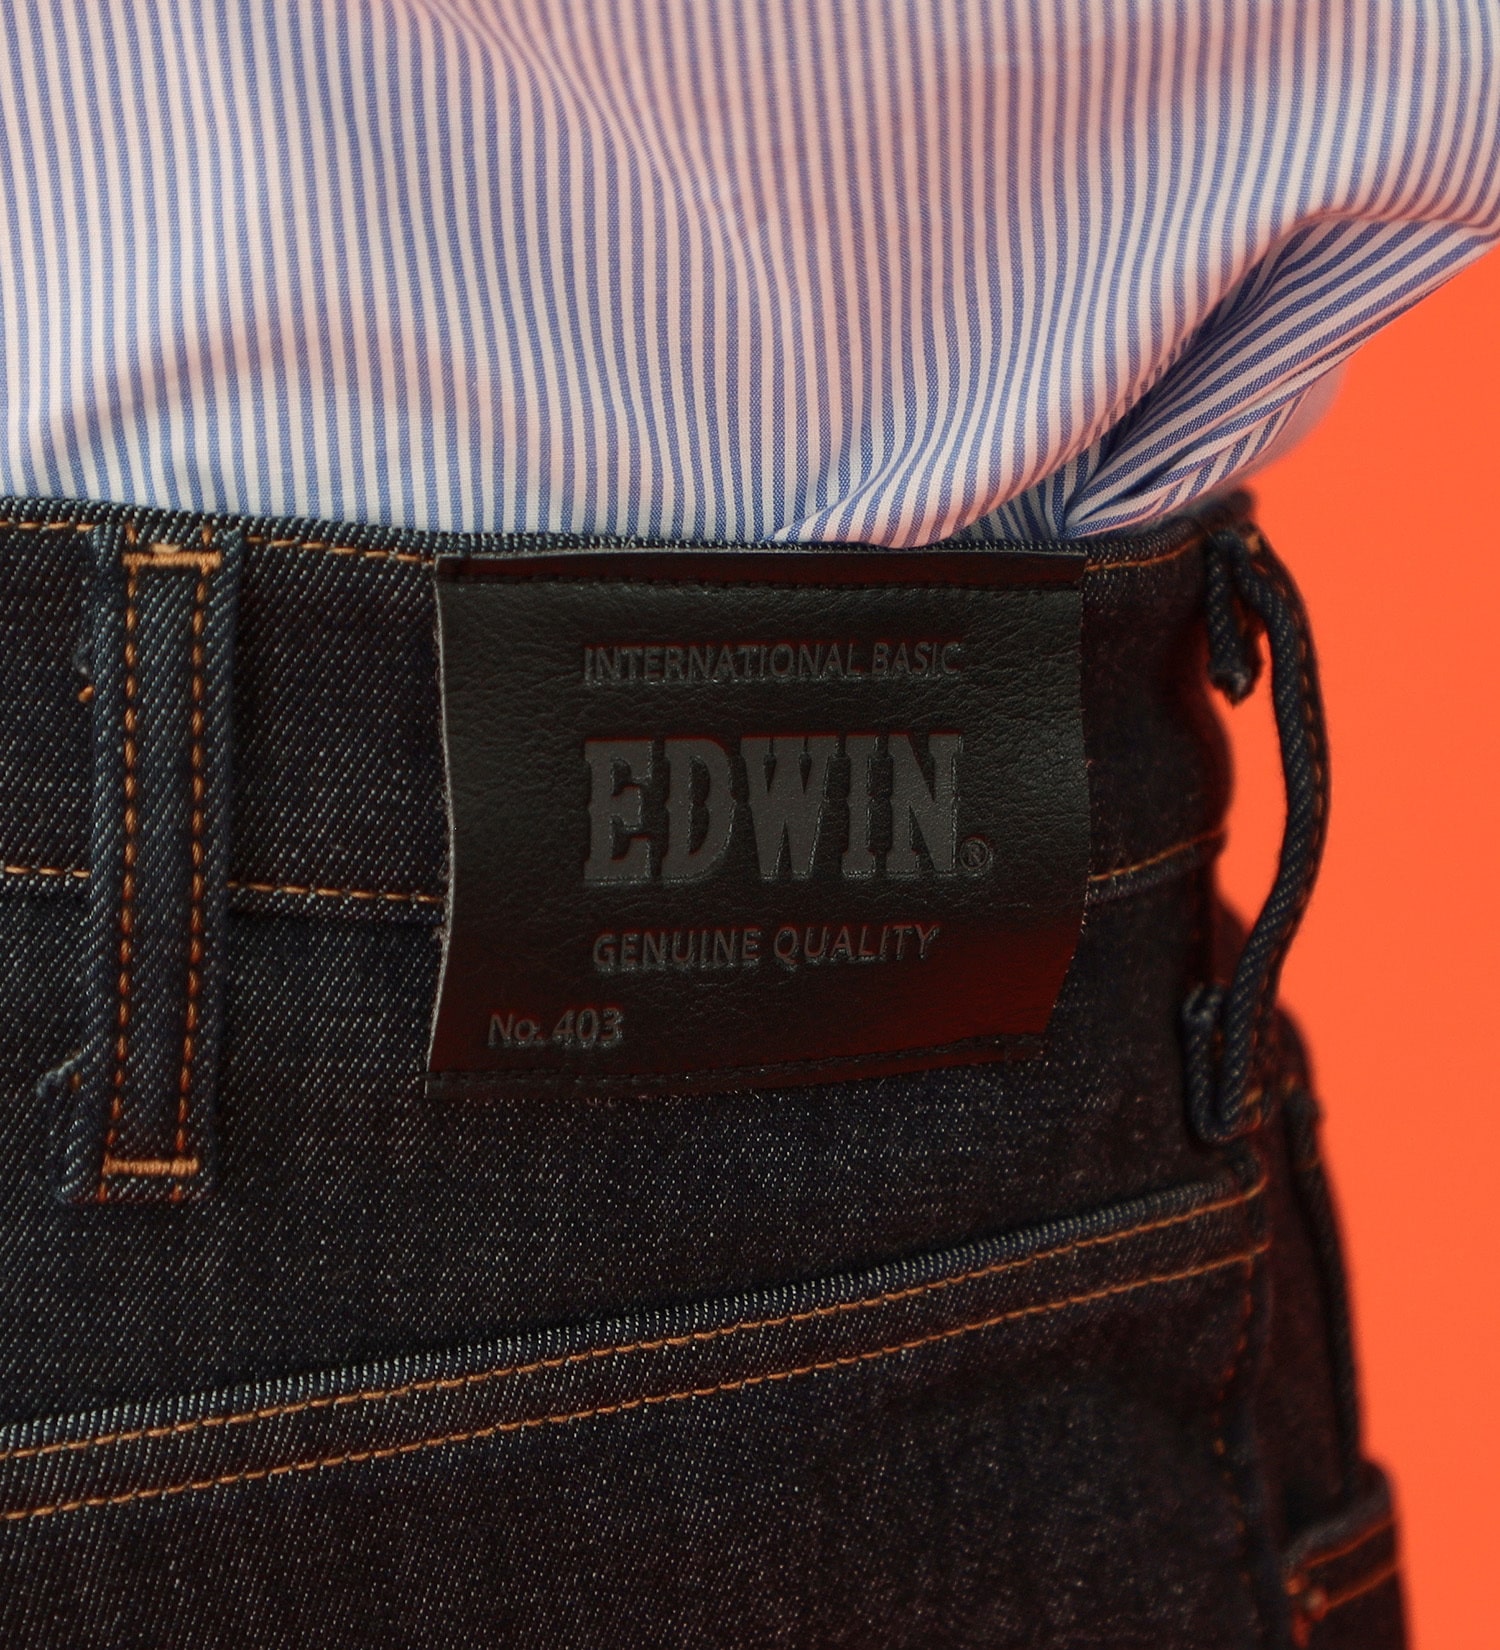 EDWIN(エドウイン)の【カート割】【SALE】【大きいサイズ】2層で暖かい EDWIN インターナショナルベーシック レギュラーストレートパンツ403 WILD FIRE 2層ボンディング構造 【暖】|パンツ/パンツ/メンズ|インディゴブルー